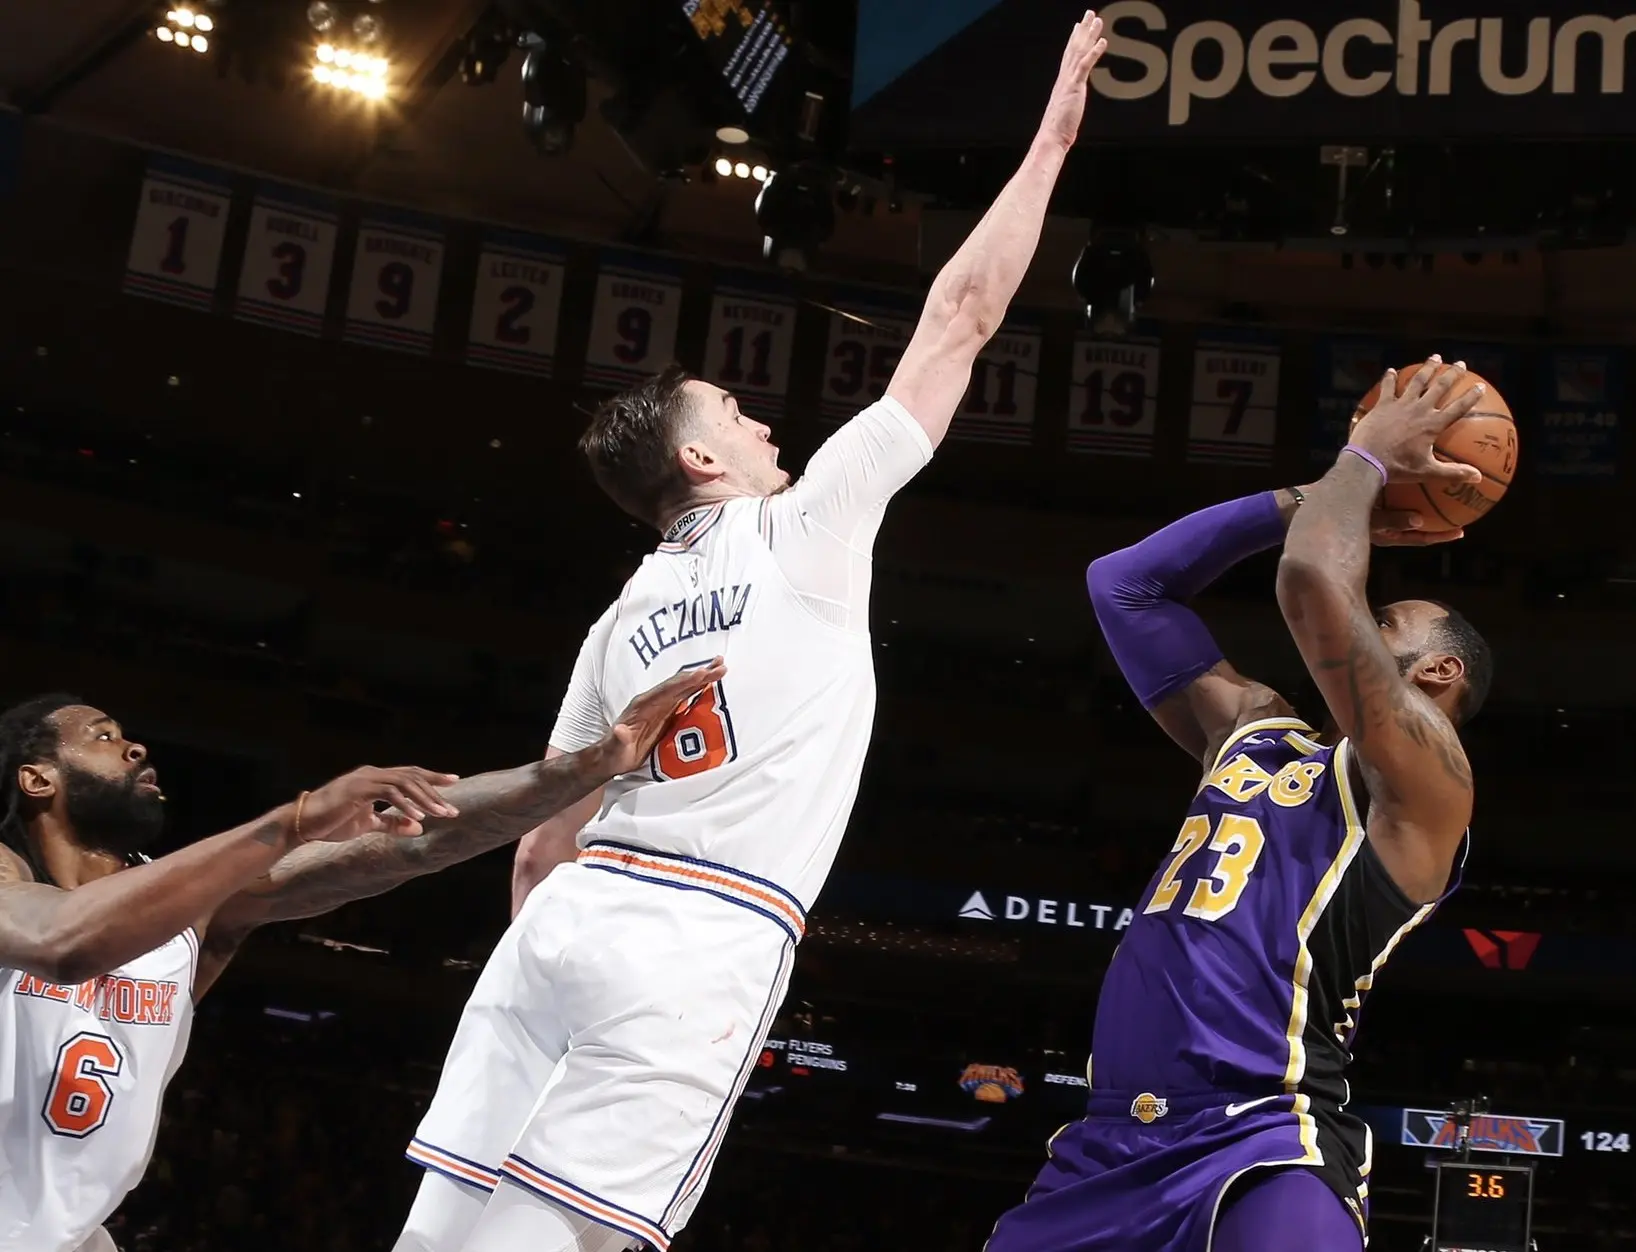 Hezonja dá toco em LeBron e garante vitória dos Knicks sobre os Lakers